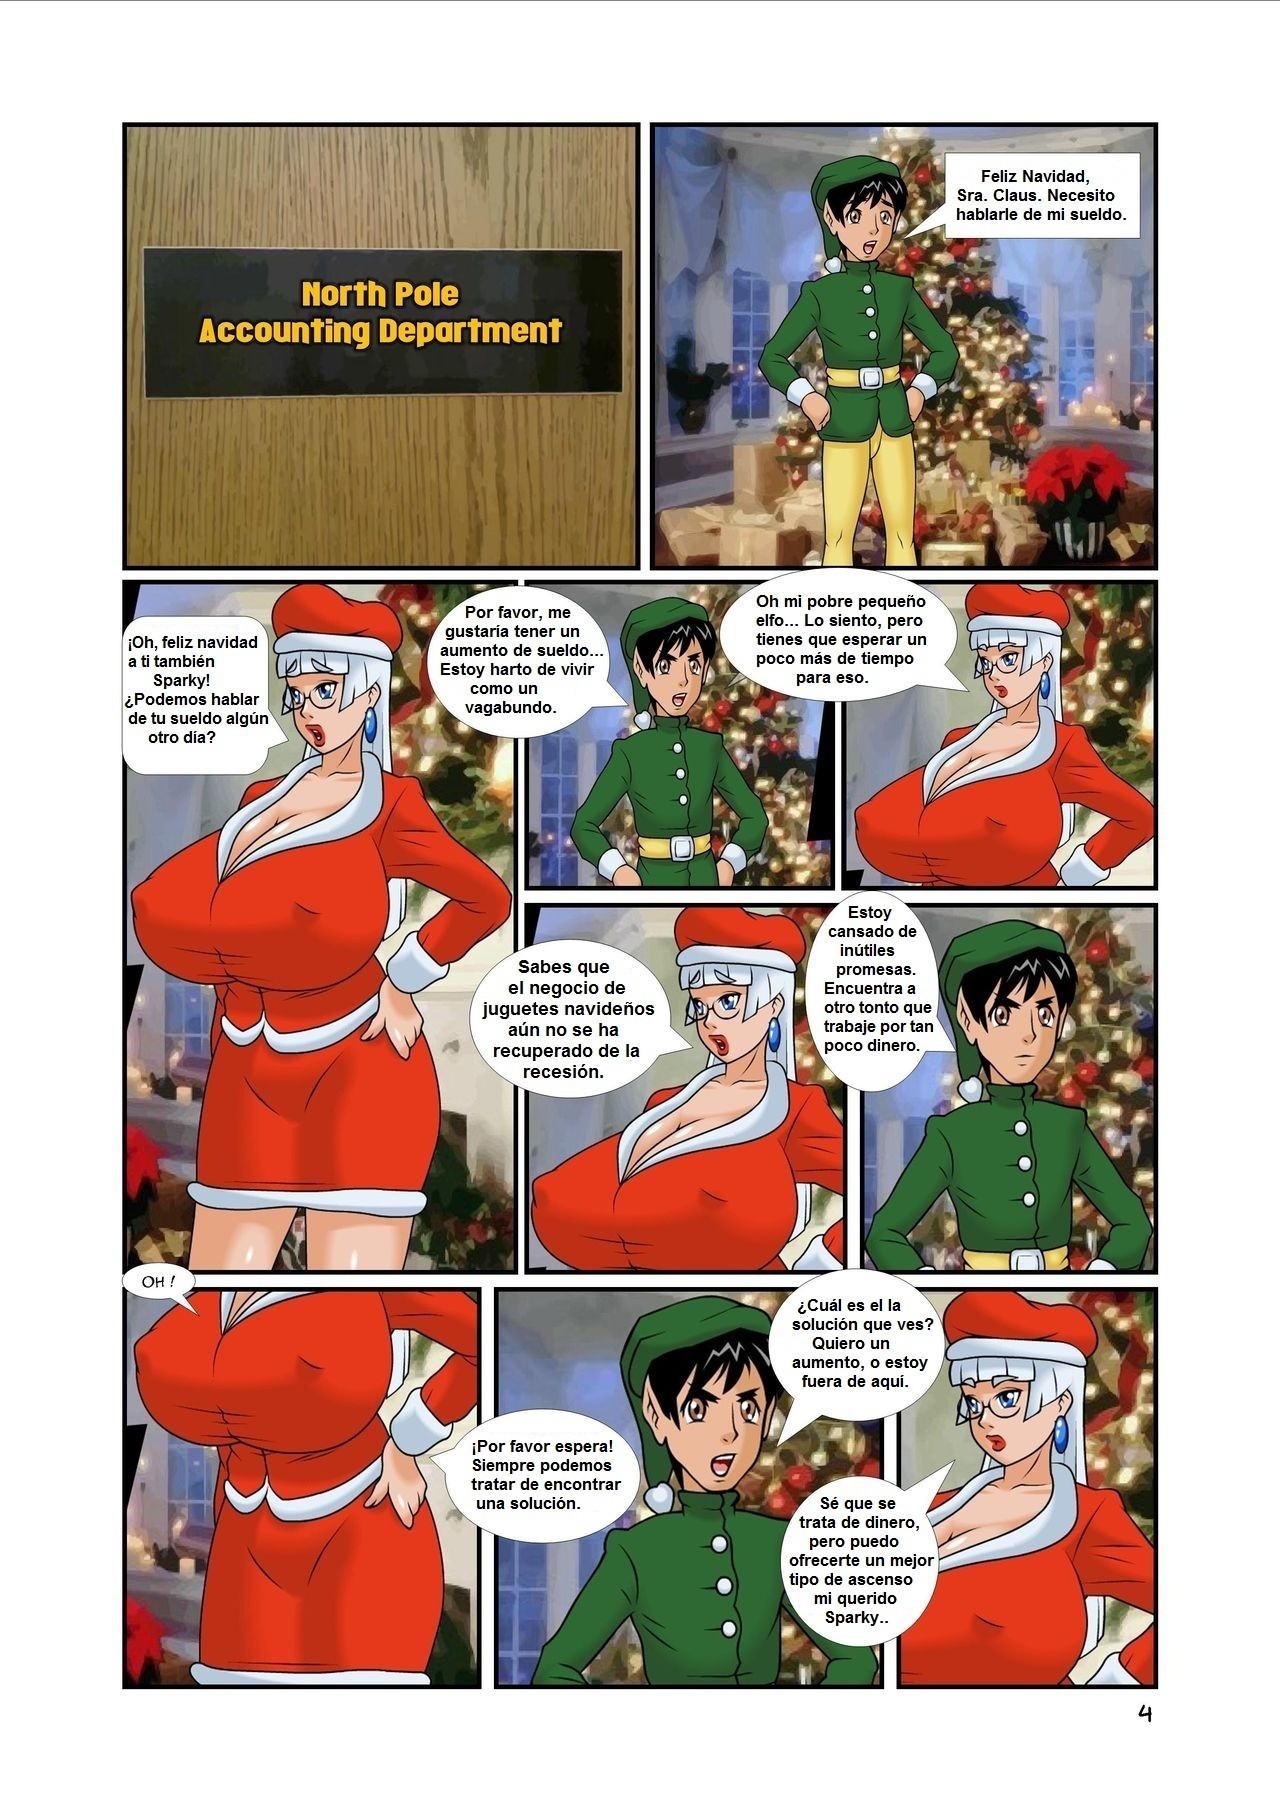 Comic Book Xxx - Sra Calus follando con el elfo navidad xxx - Comics Porno ...